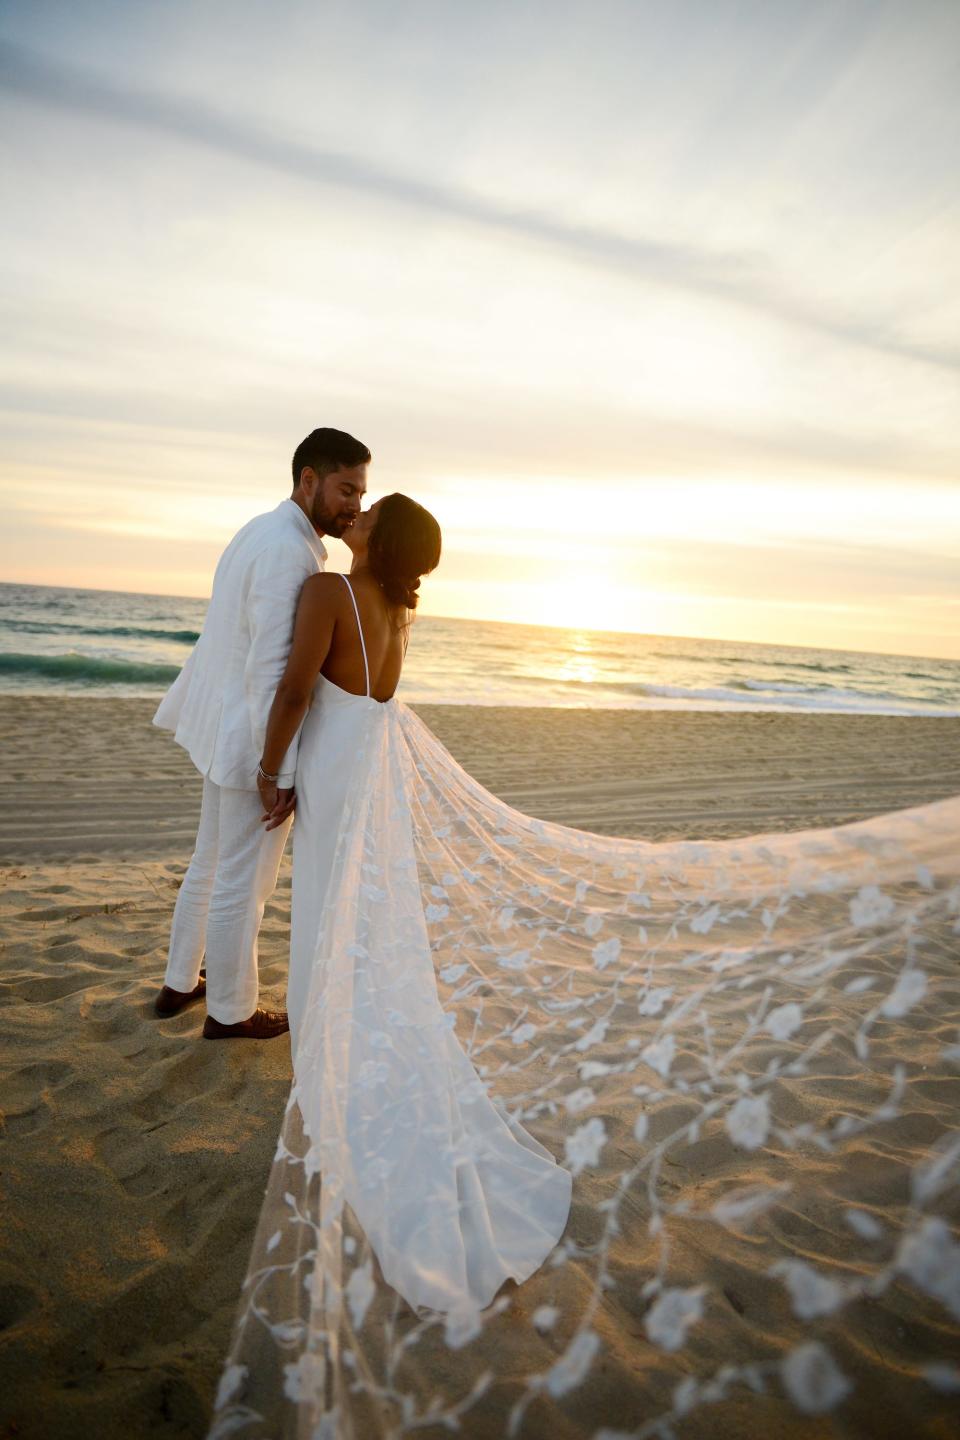 A bride and groom kiss on a beach.